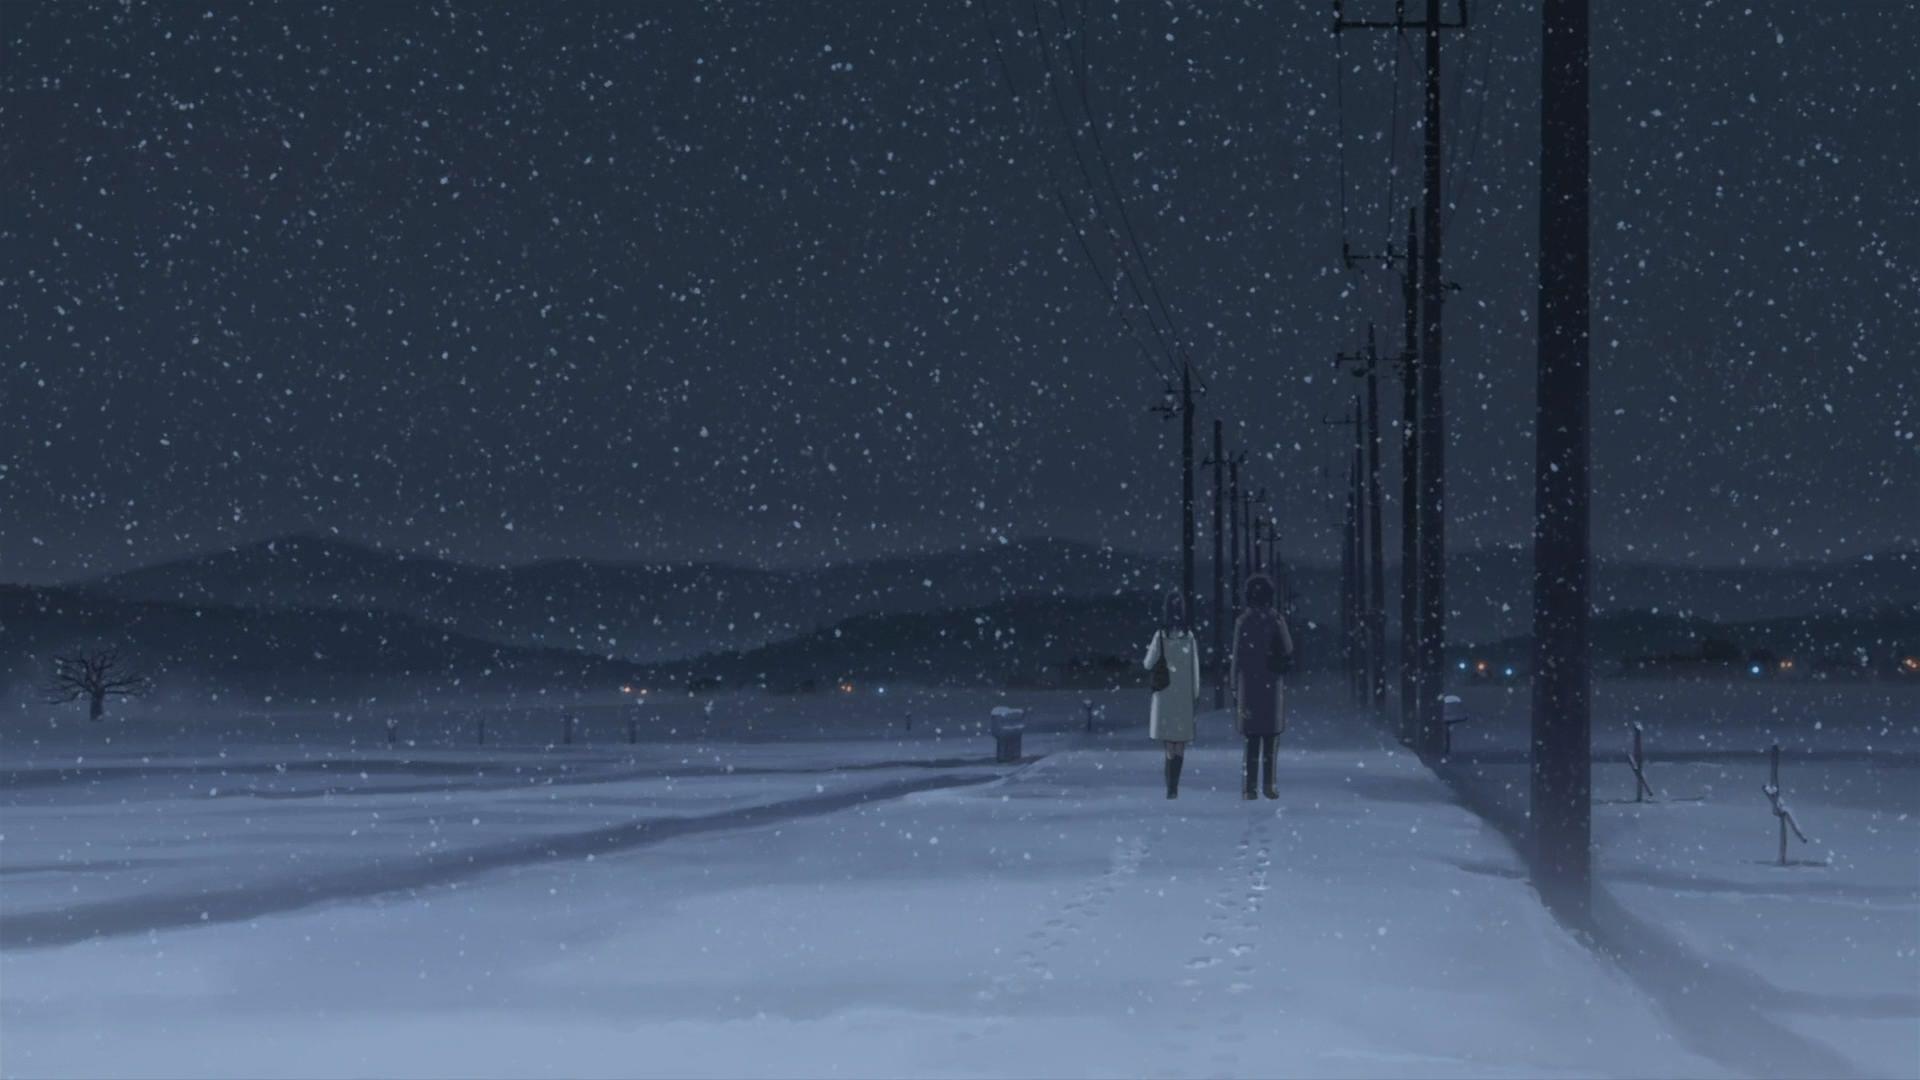 Anime Winter Scenery Wallpaper 8. Scenery wallpaper, Winter